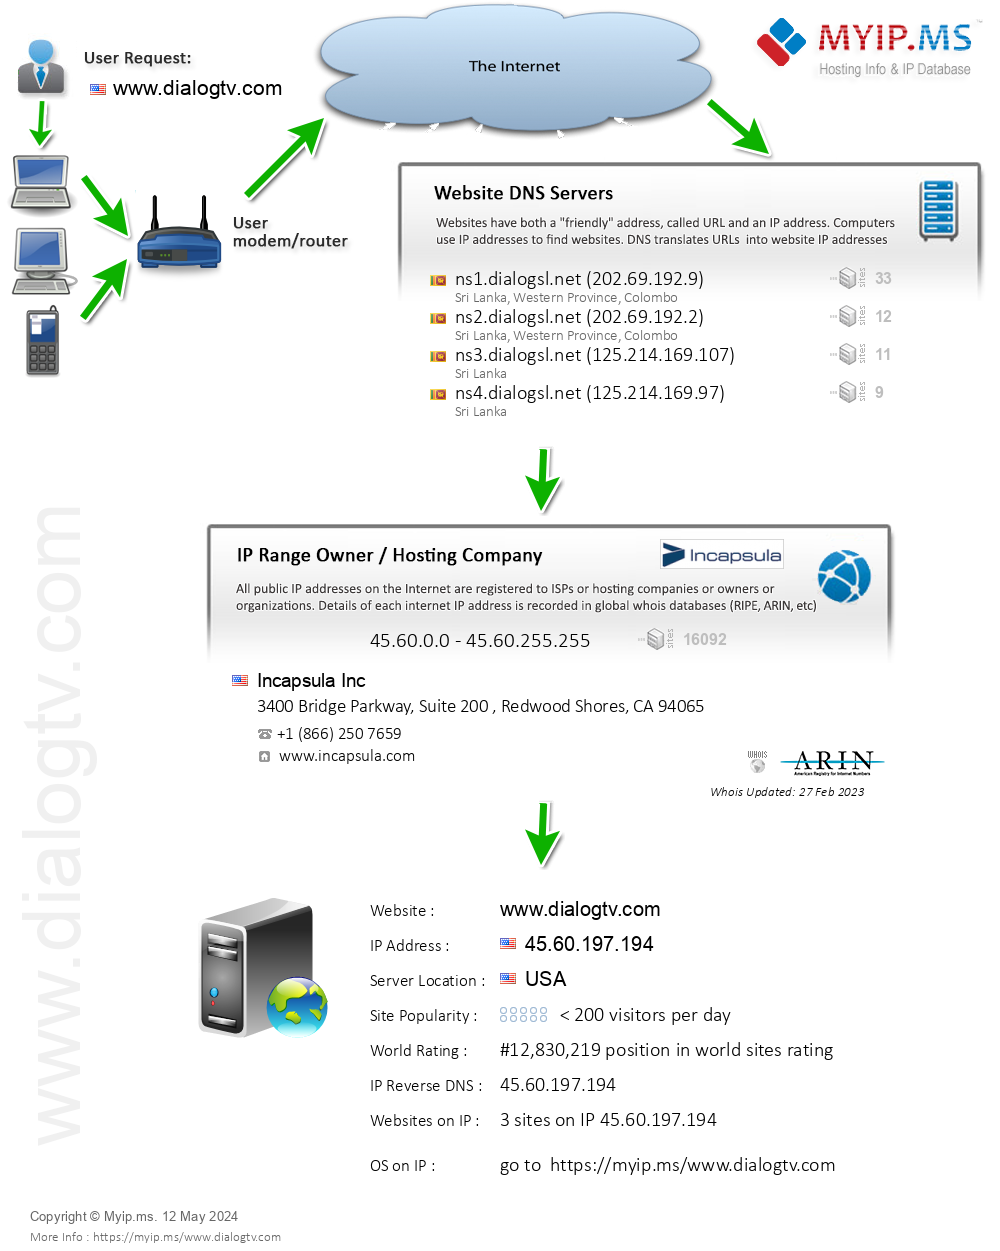 Dialogtv.com - Website Hosting Visual IP Diagram